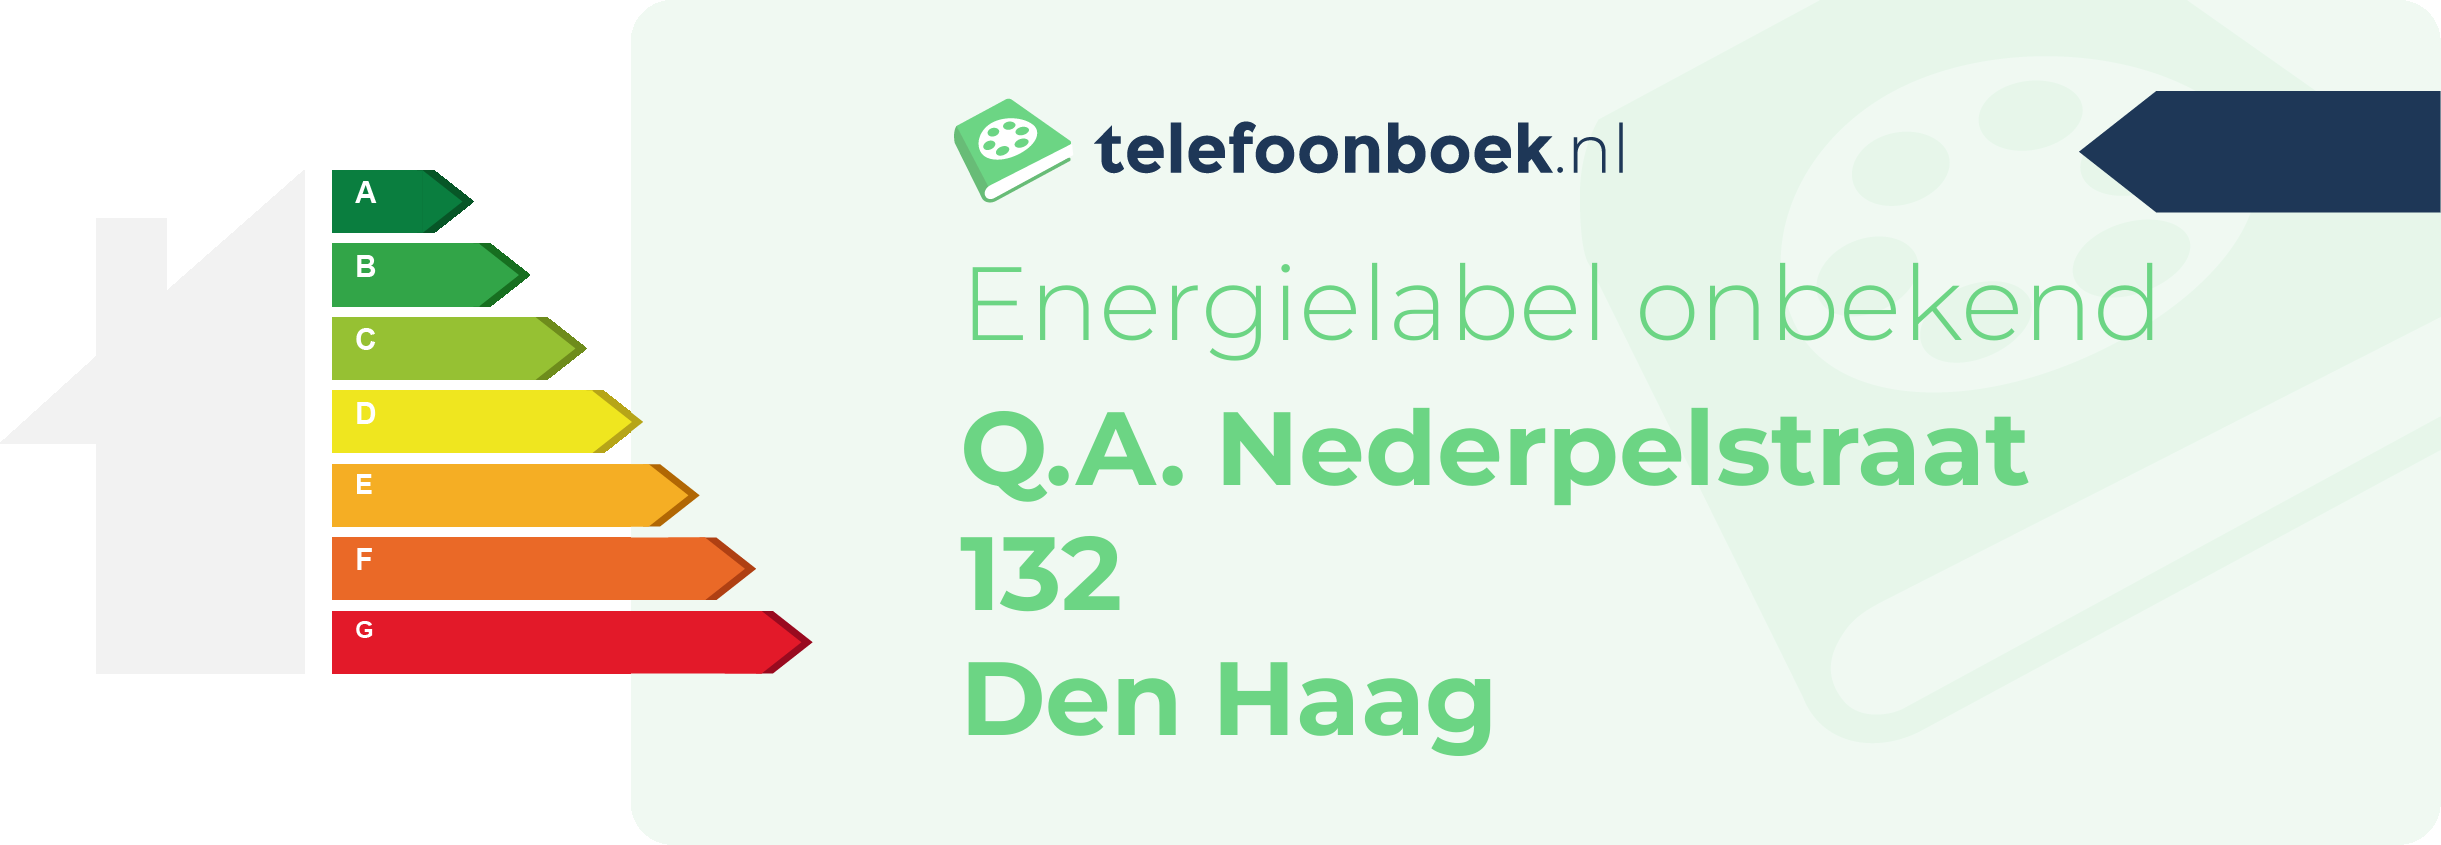 Energielabel Q.A. Nederpelstraat 132 Den Haag